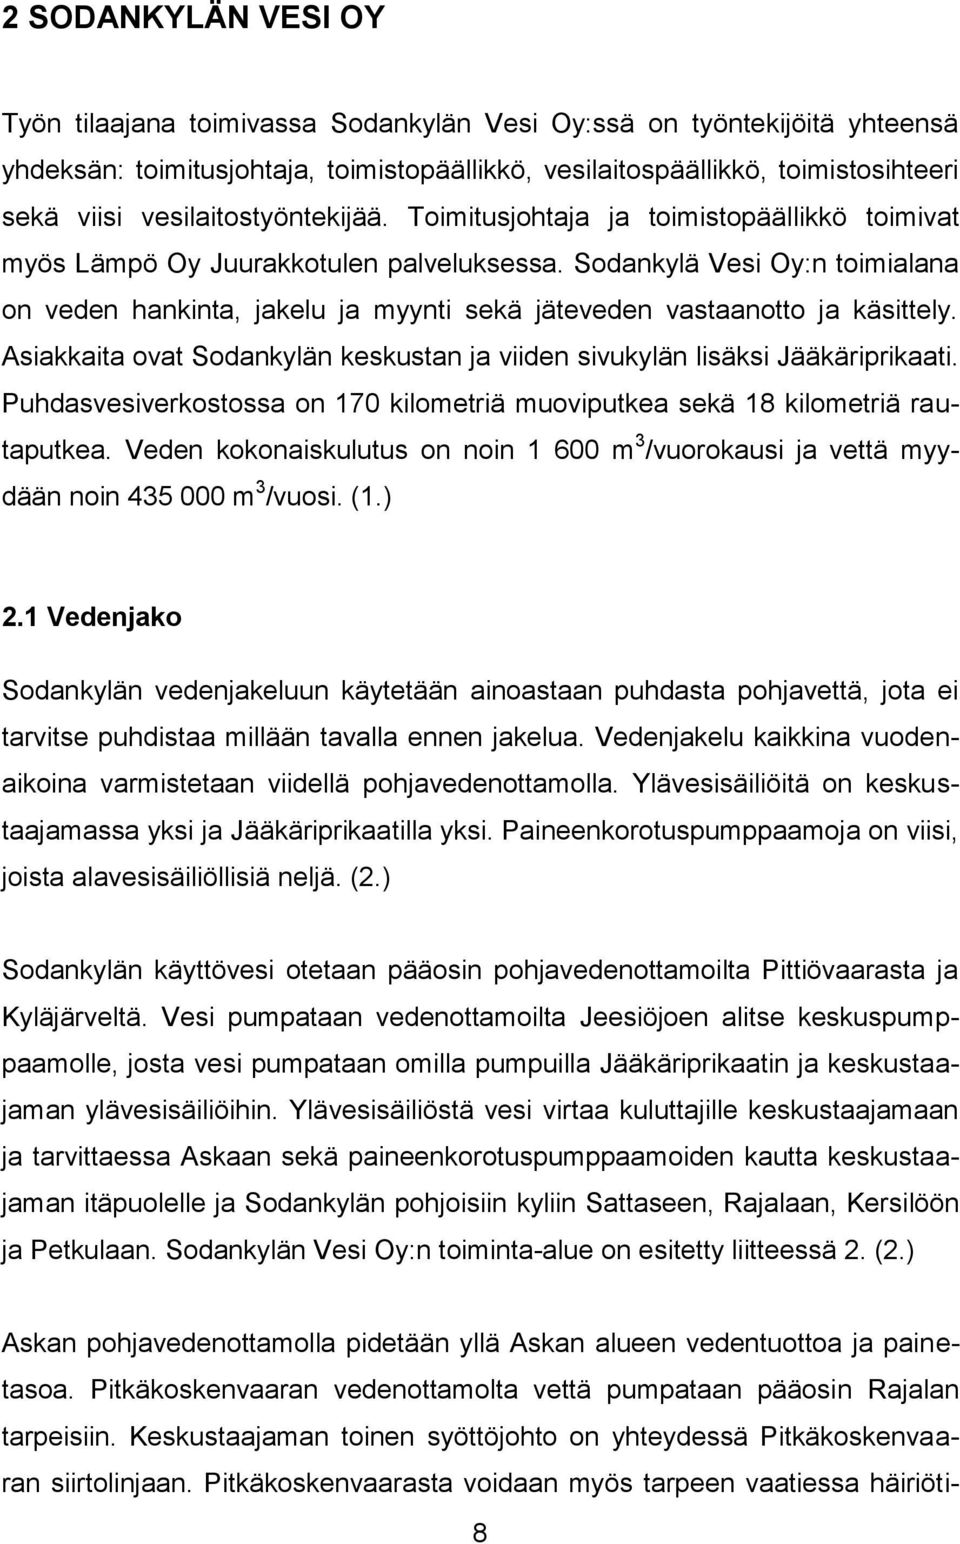 Sodankylä Vesi Oy:n toimialana on veden hankinta, jakelu ja myynti sekä jäteveden vastaanotto ja käsittely. Asiakkaita ovat Sodankylän keskustan ja viiden sivukylän lisäksi Jääkäriprikaati.